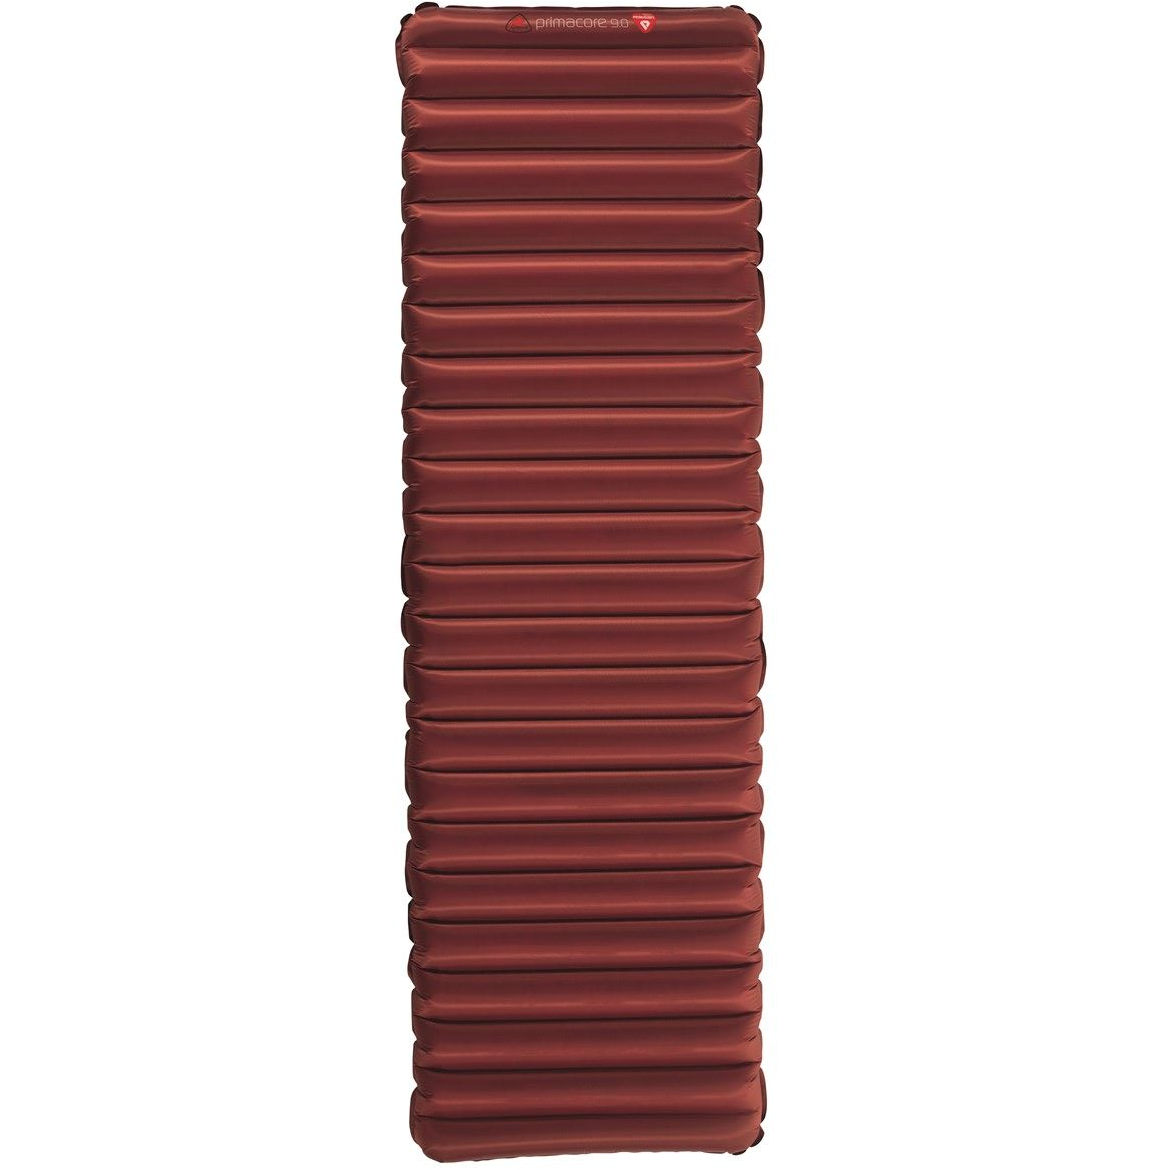 Produktbild von Robens PrimaCore 90 Isomatte - Warm Red